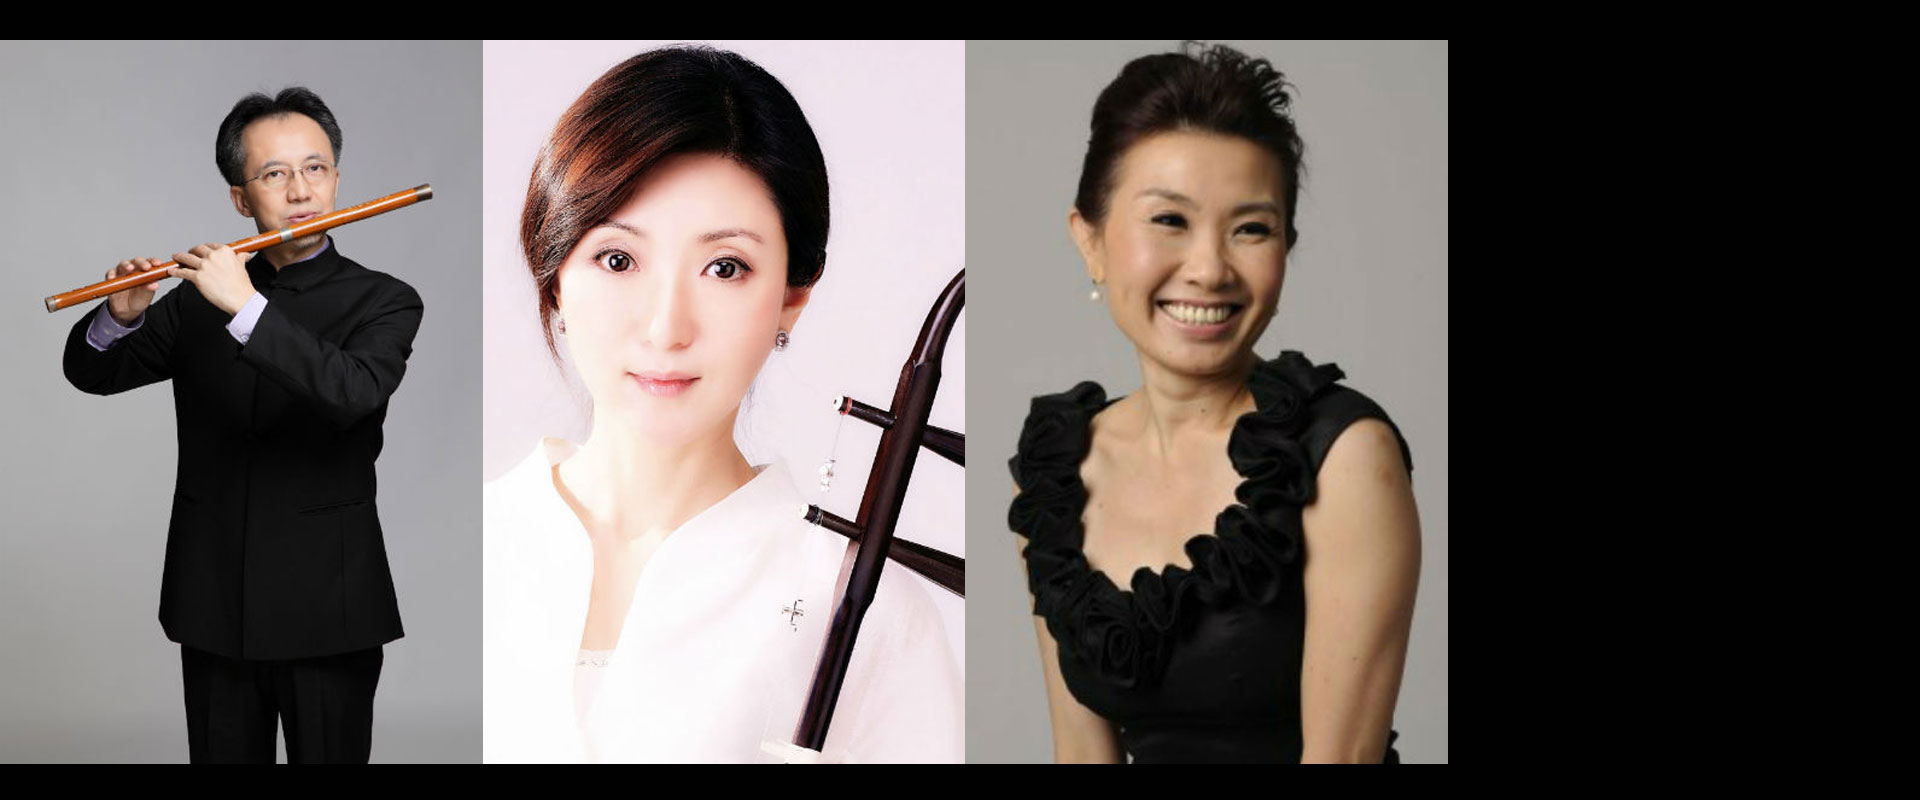 Flavours-of-Chinese-Music-2 Flavours of Chinese Music – A Night of Liu Xi Jin’s Works